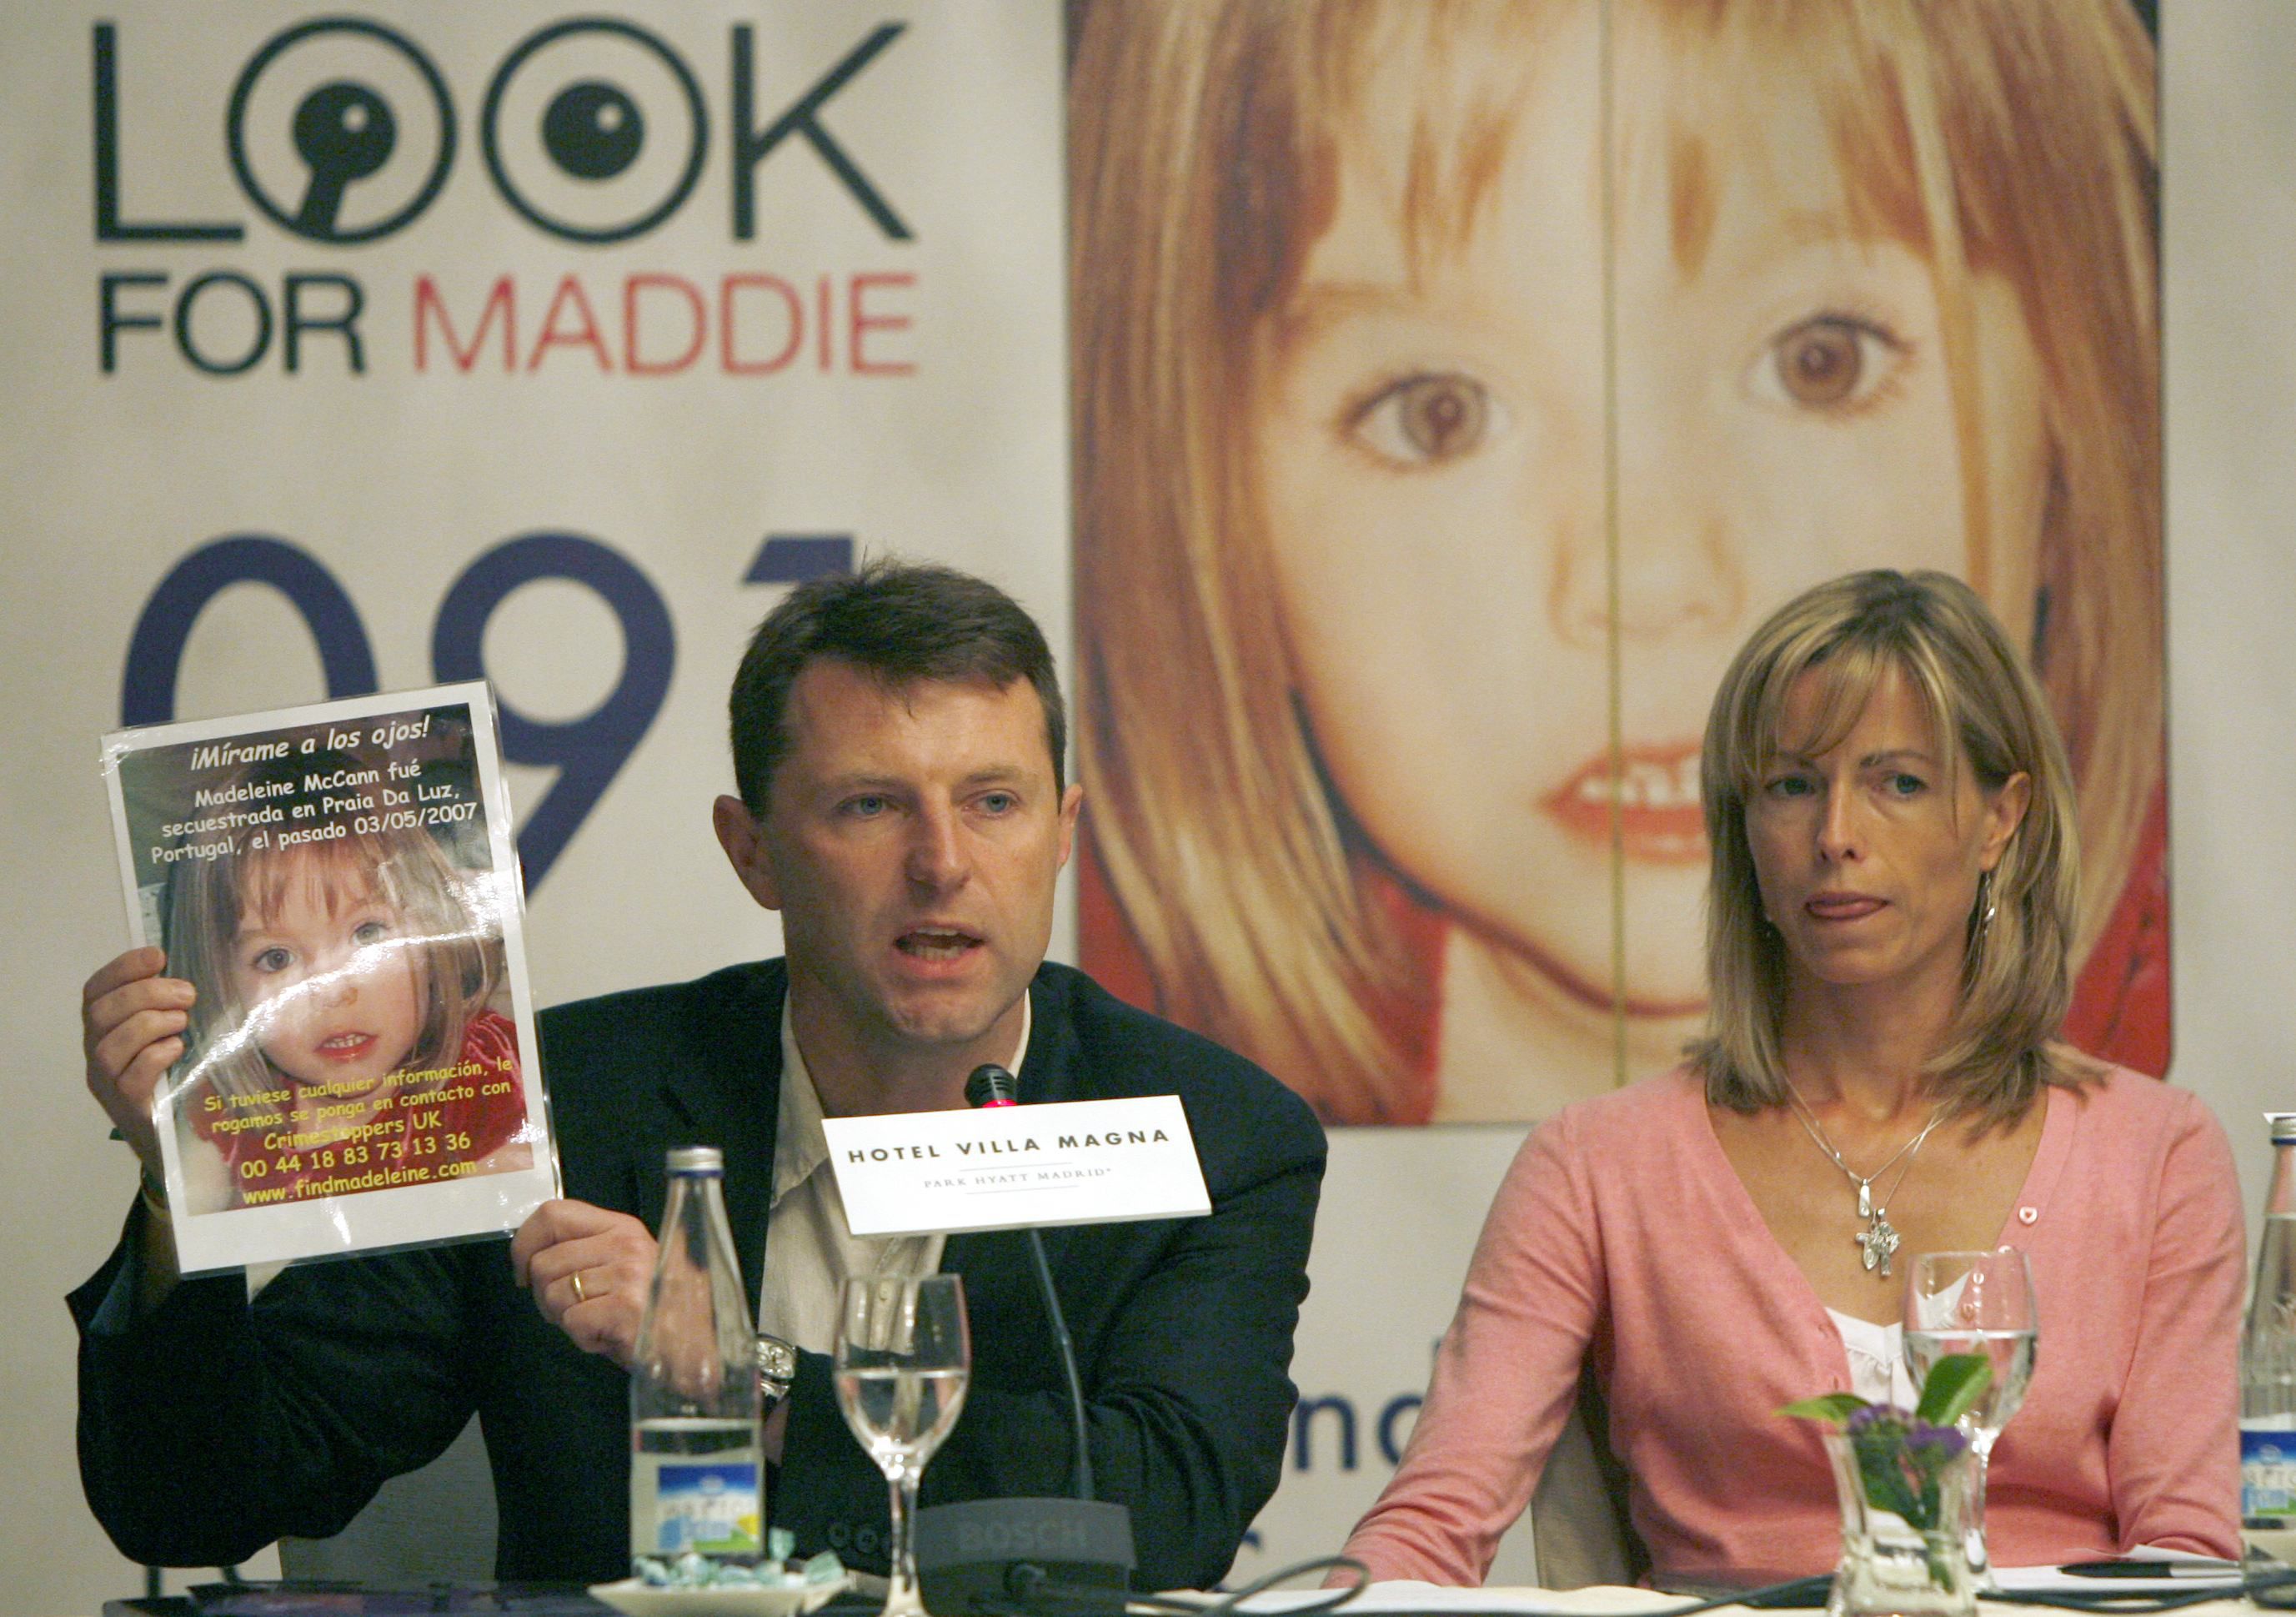 MD23. MADRID, 01/06/07.- Los padres de Madeleine McCann, la niña británica de 4 años desaparecida el pasado día 3 en Portugal, durante la rueda de prensa que ofrecieron hoy en Madrid dentro de su gira por varias capitales europeas para pedir ayuda en la búsqueda de su hija. EFE/J.L. Pino